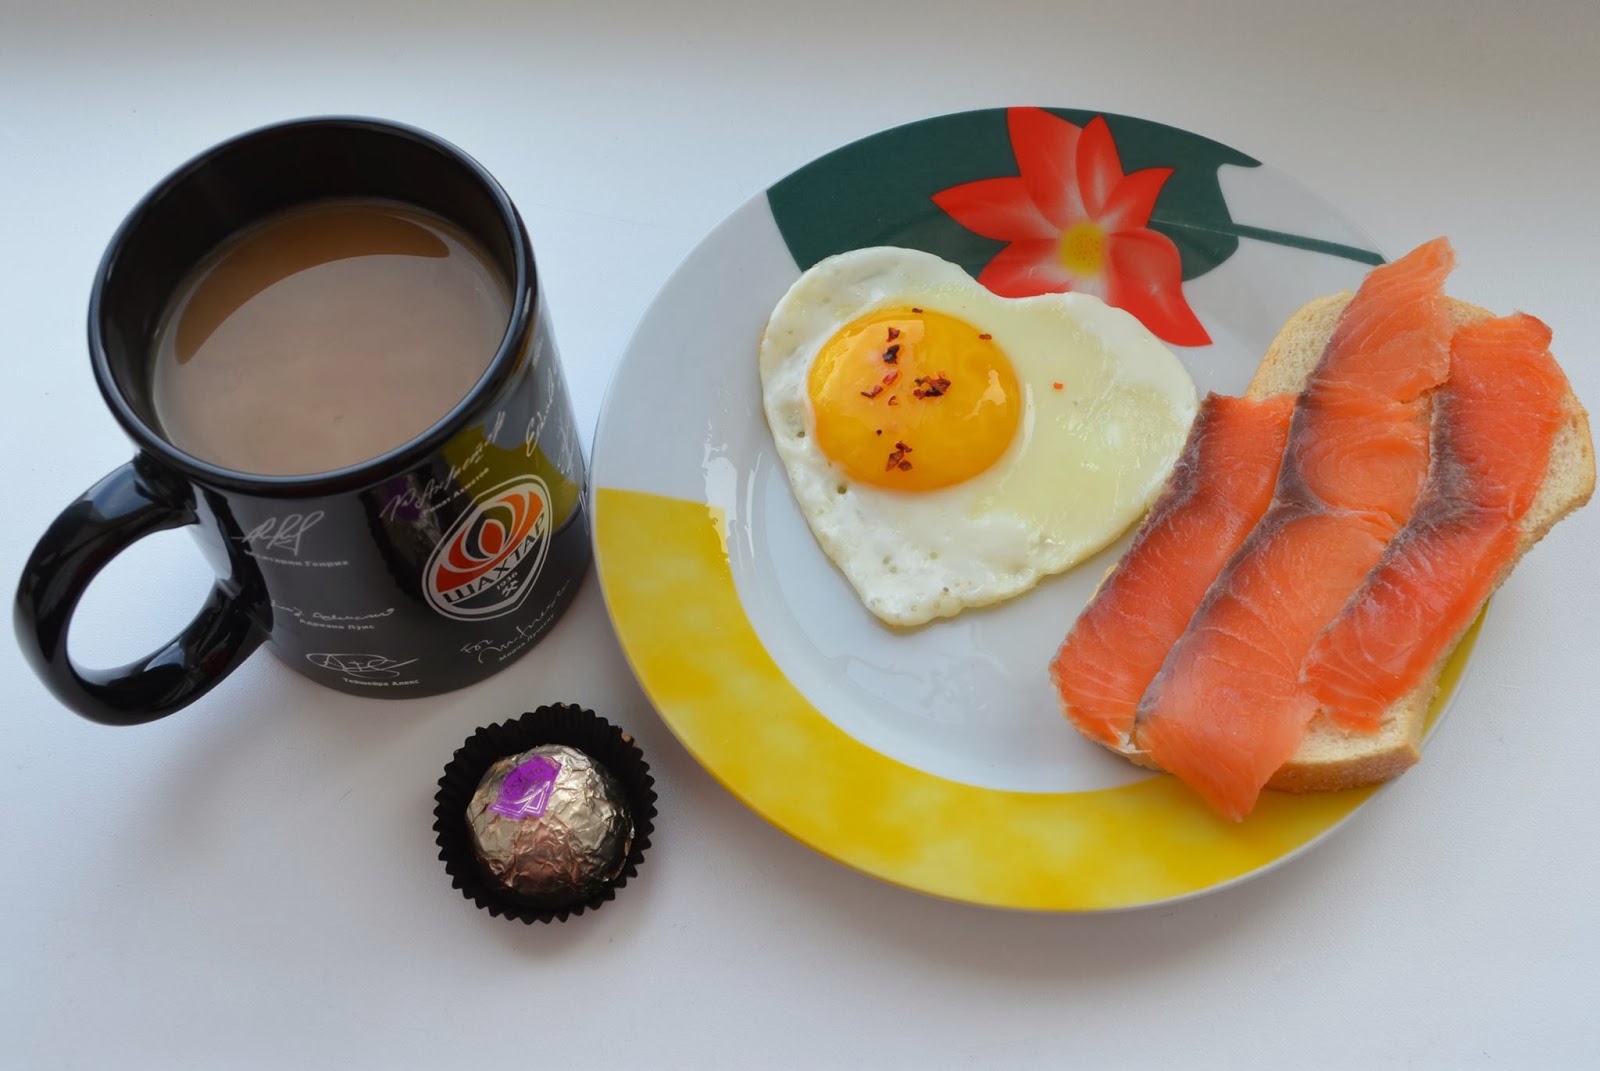 Мама сделала сыночку королевский минет вместо вкусного завтрака